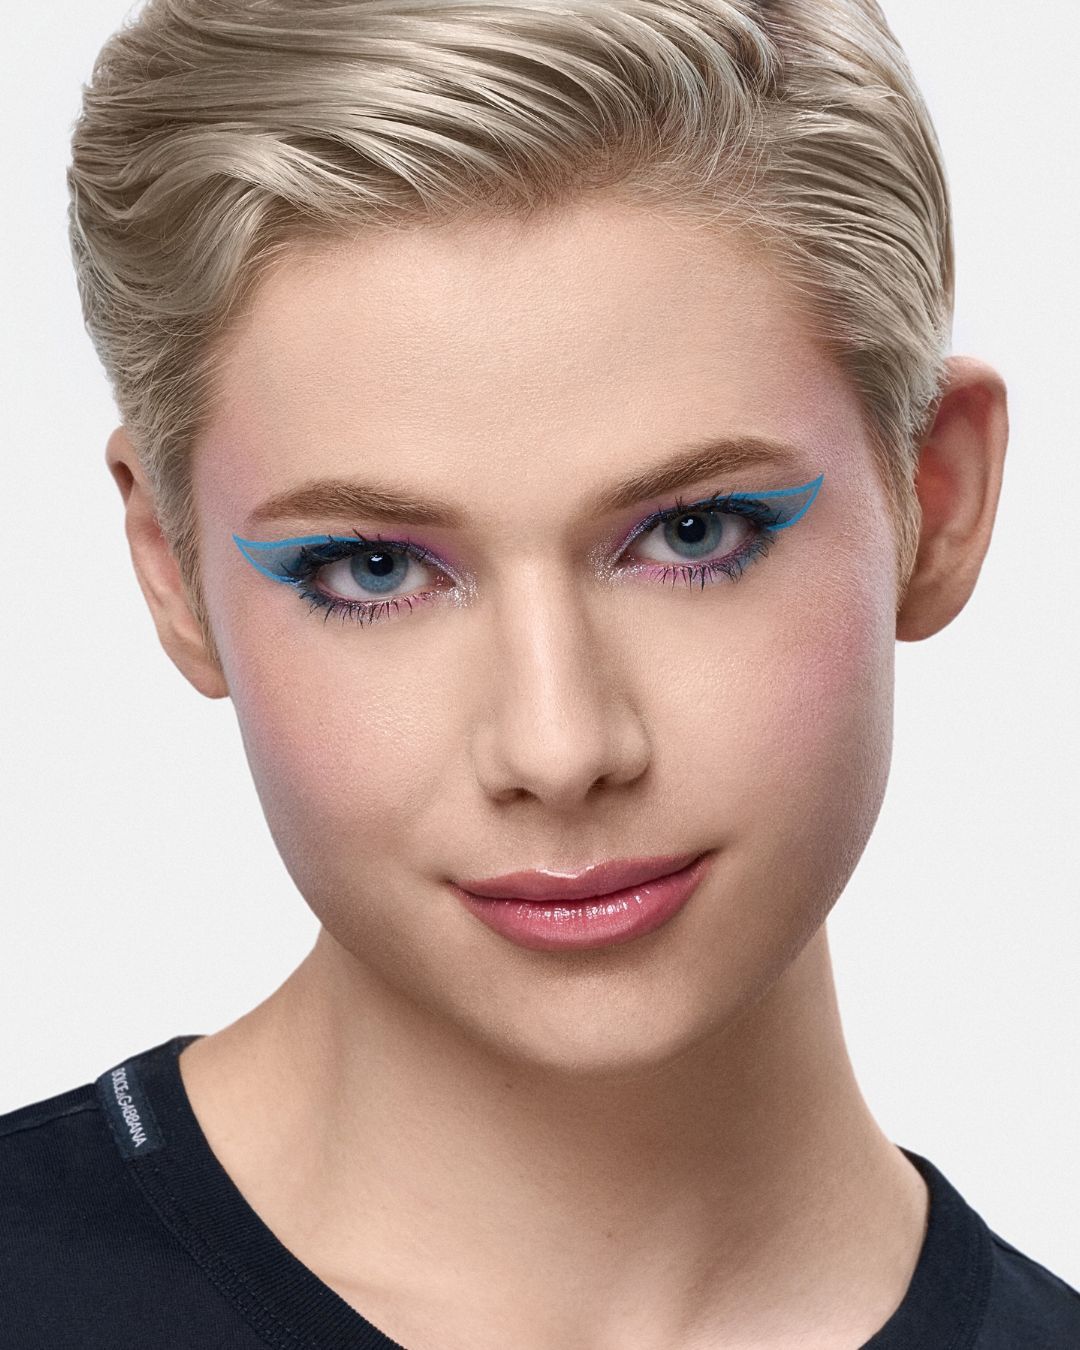 Jake Warden vuole cambiare il mondo con la bellezza Intervista al ventiduenne Global Make-up Expert per Dolce&Gabbana Beauty